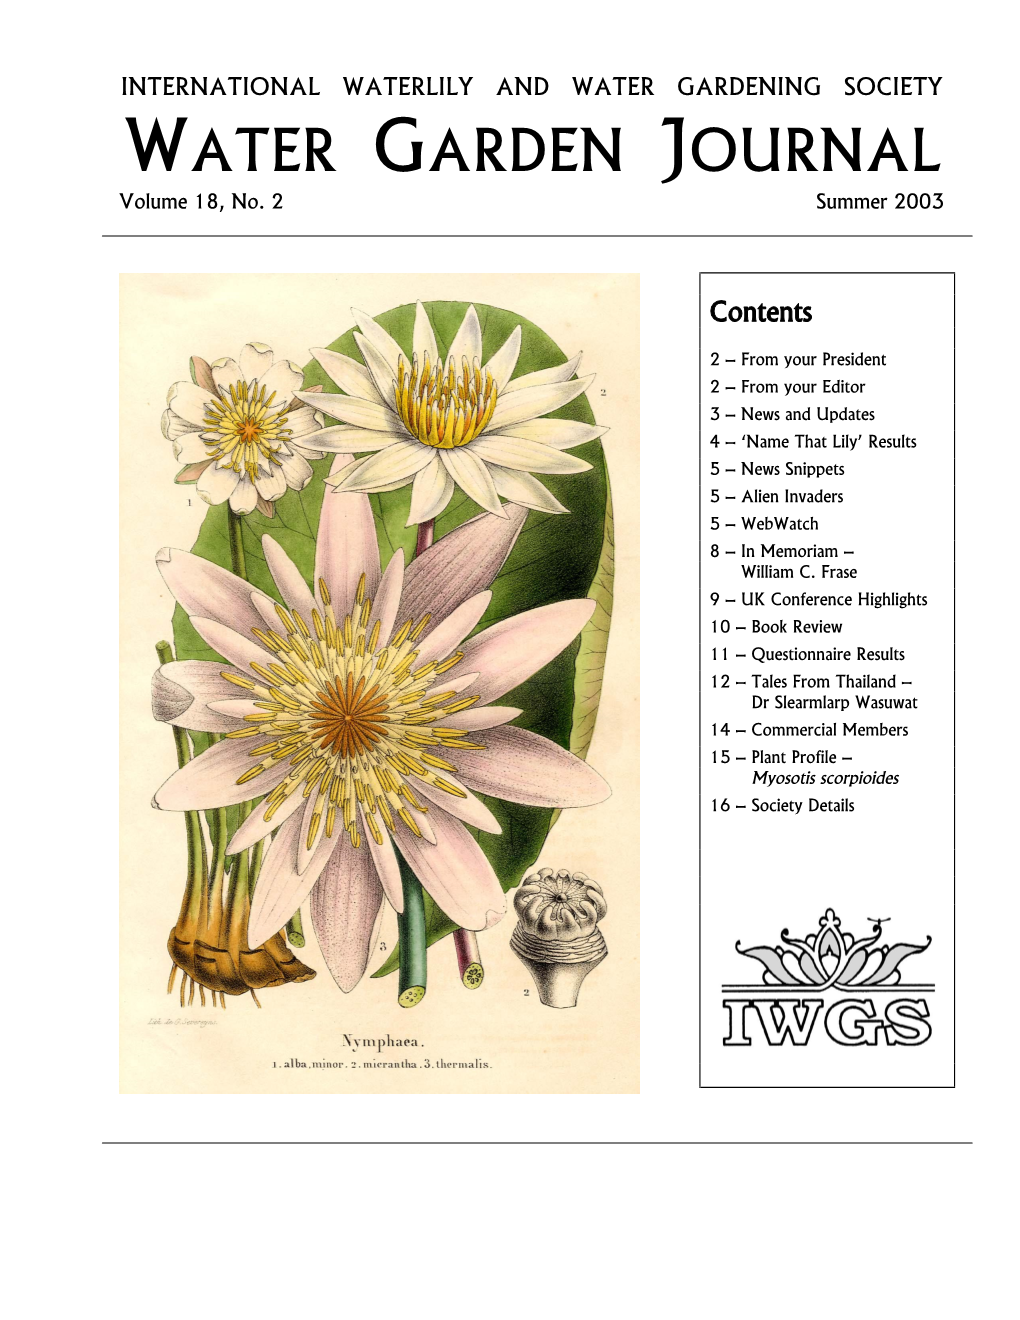 WATER GARDEN JOURNAL Volume 18, No